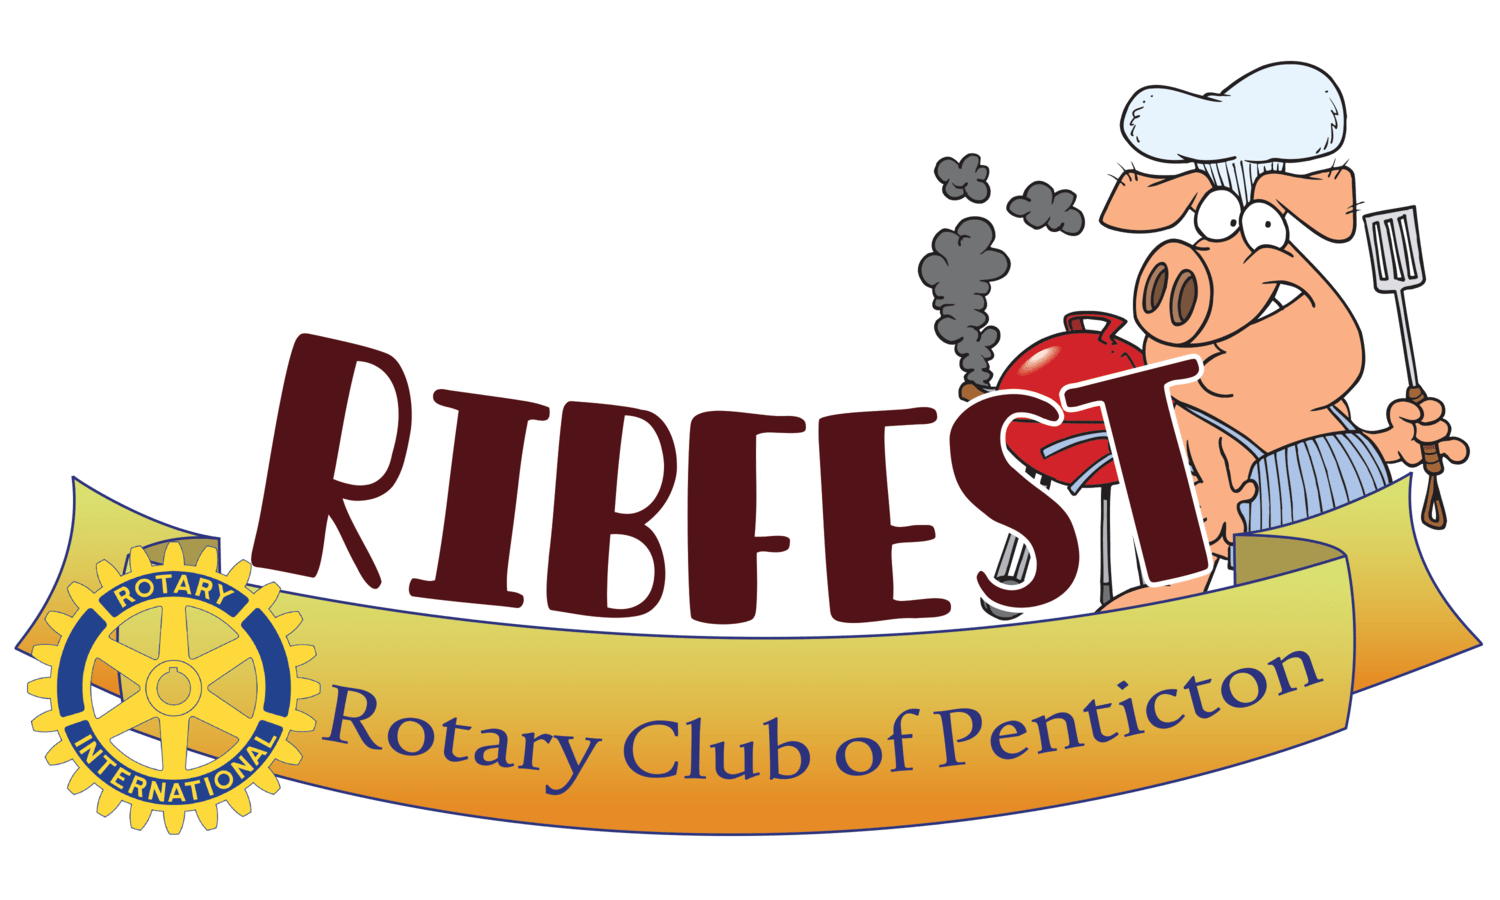 Ribfest Penticton